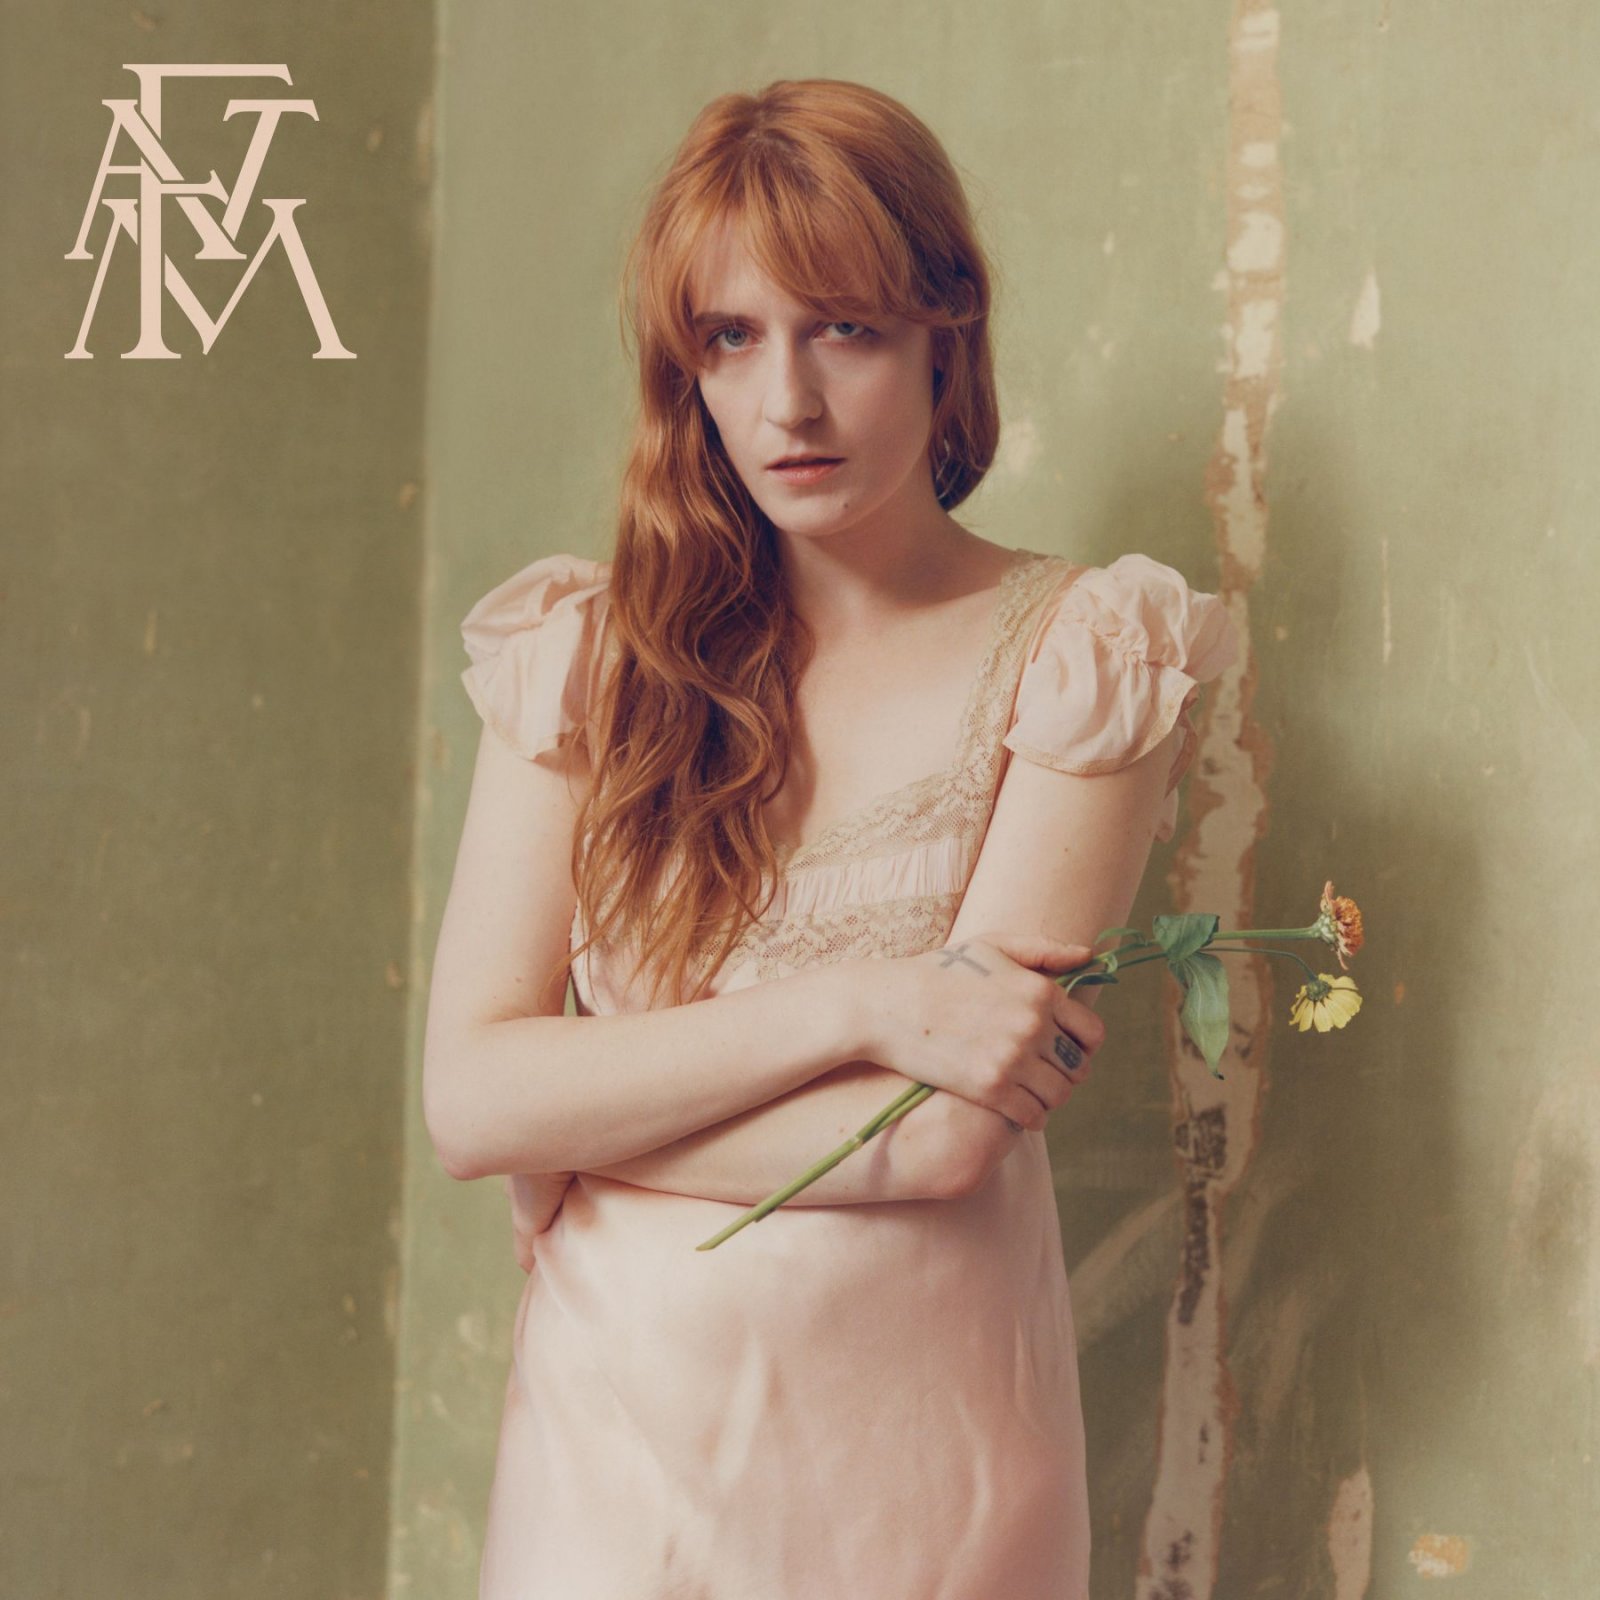 Florence + the Machine: Annunciato il nuovo album “High As Hope” nei negozi e in digitale dal 29 giugno